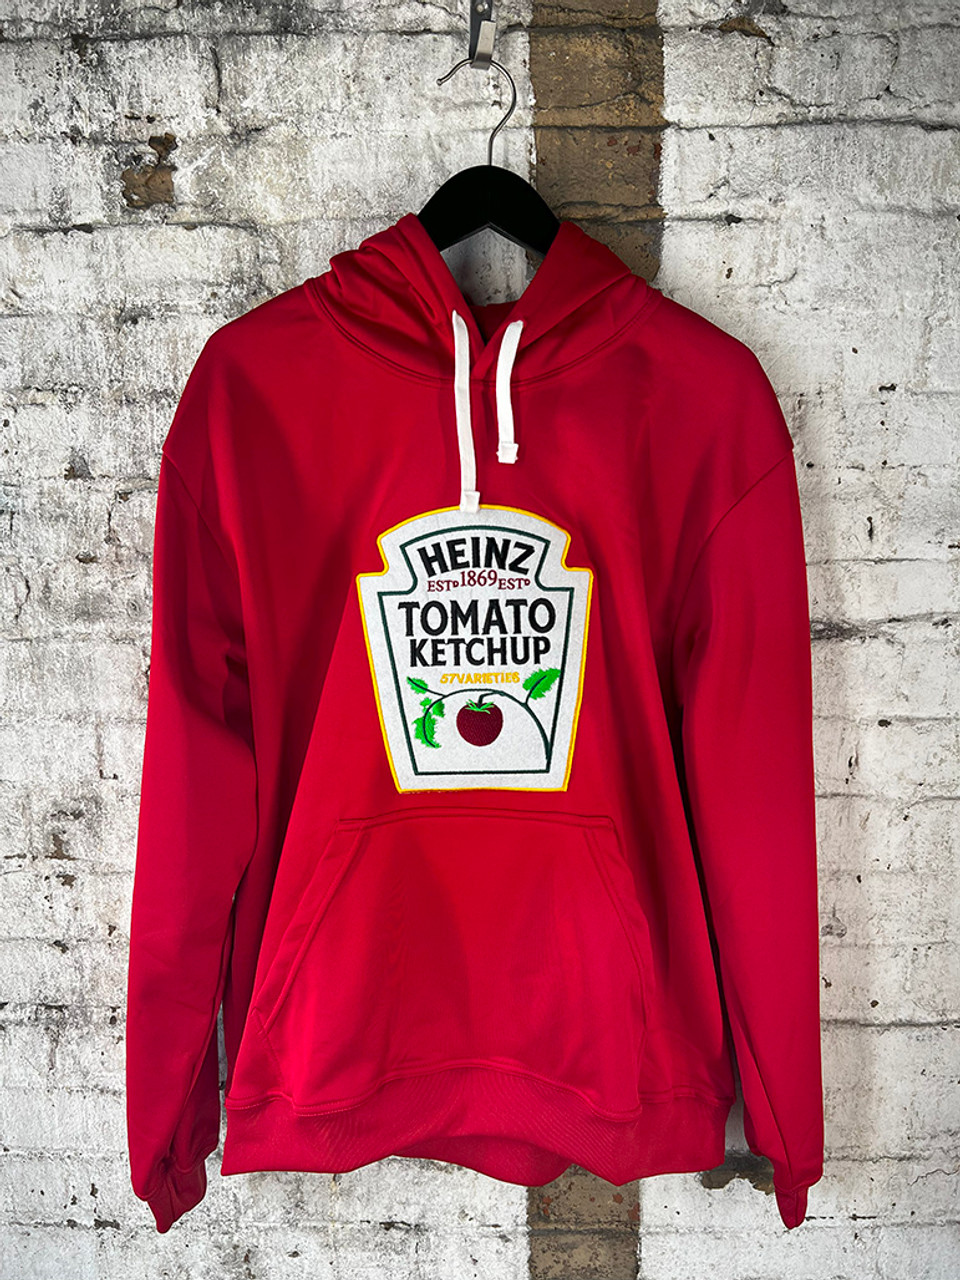 HEINZ Tomato Ketchup Performance Sweatshirt